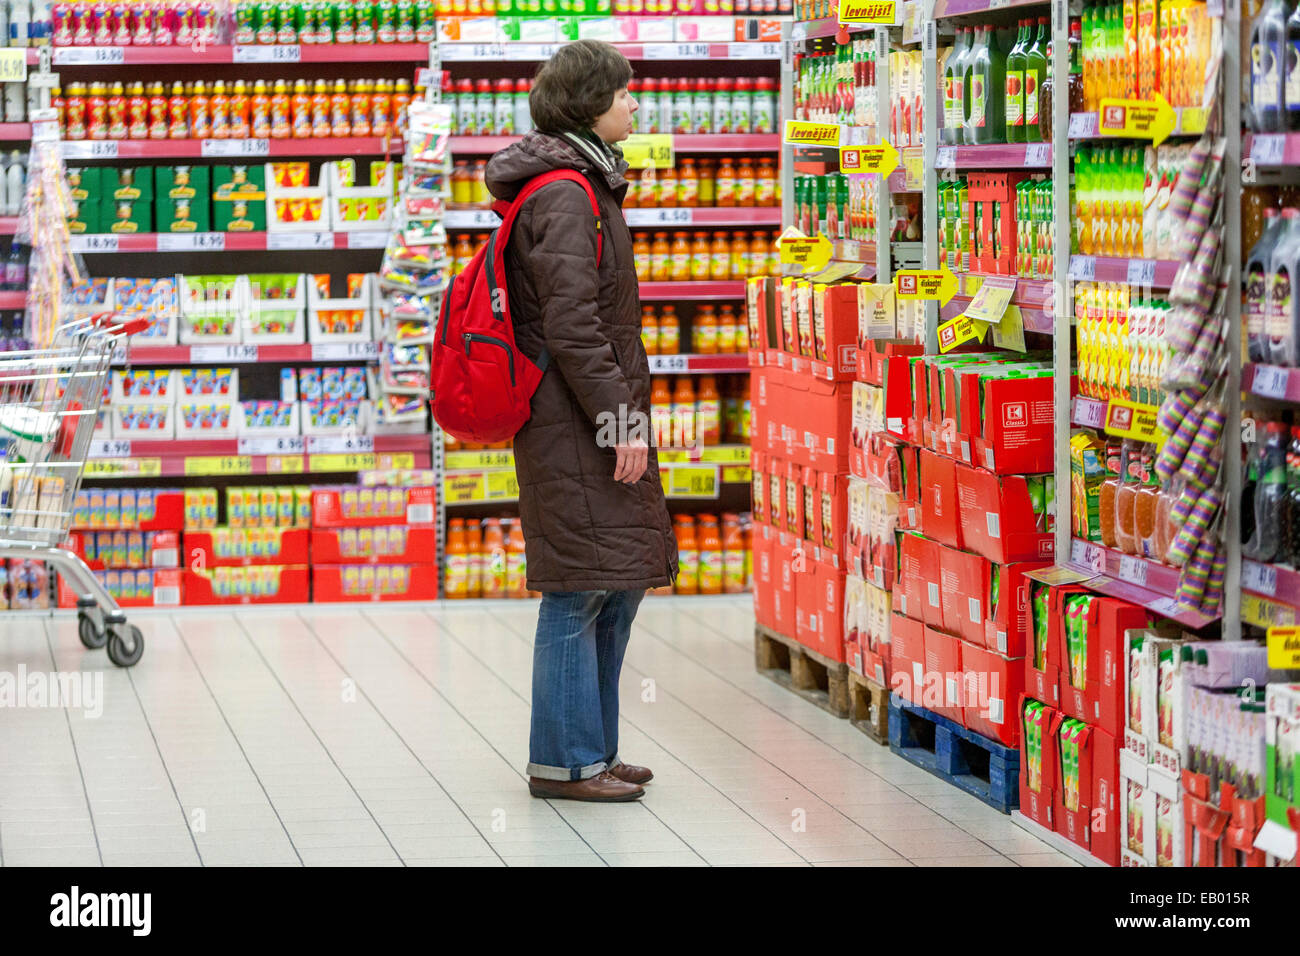 Persone, donne scelgono le merci tra gli scaffali, lo shopping negli scaffali dei supermercati non ha prezzo Foto Stock